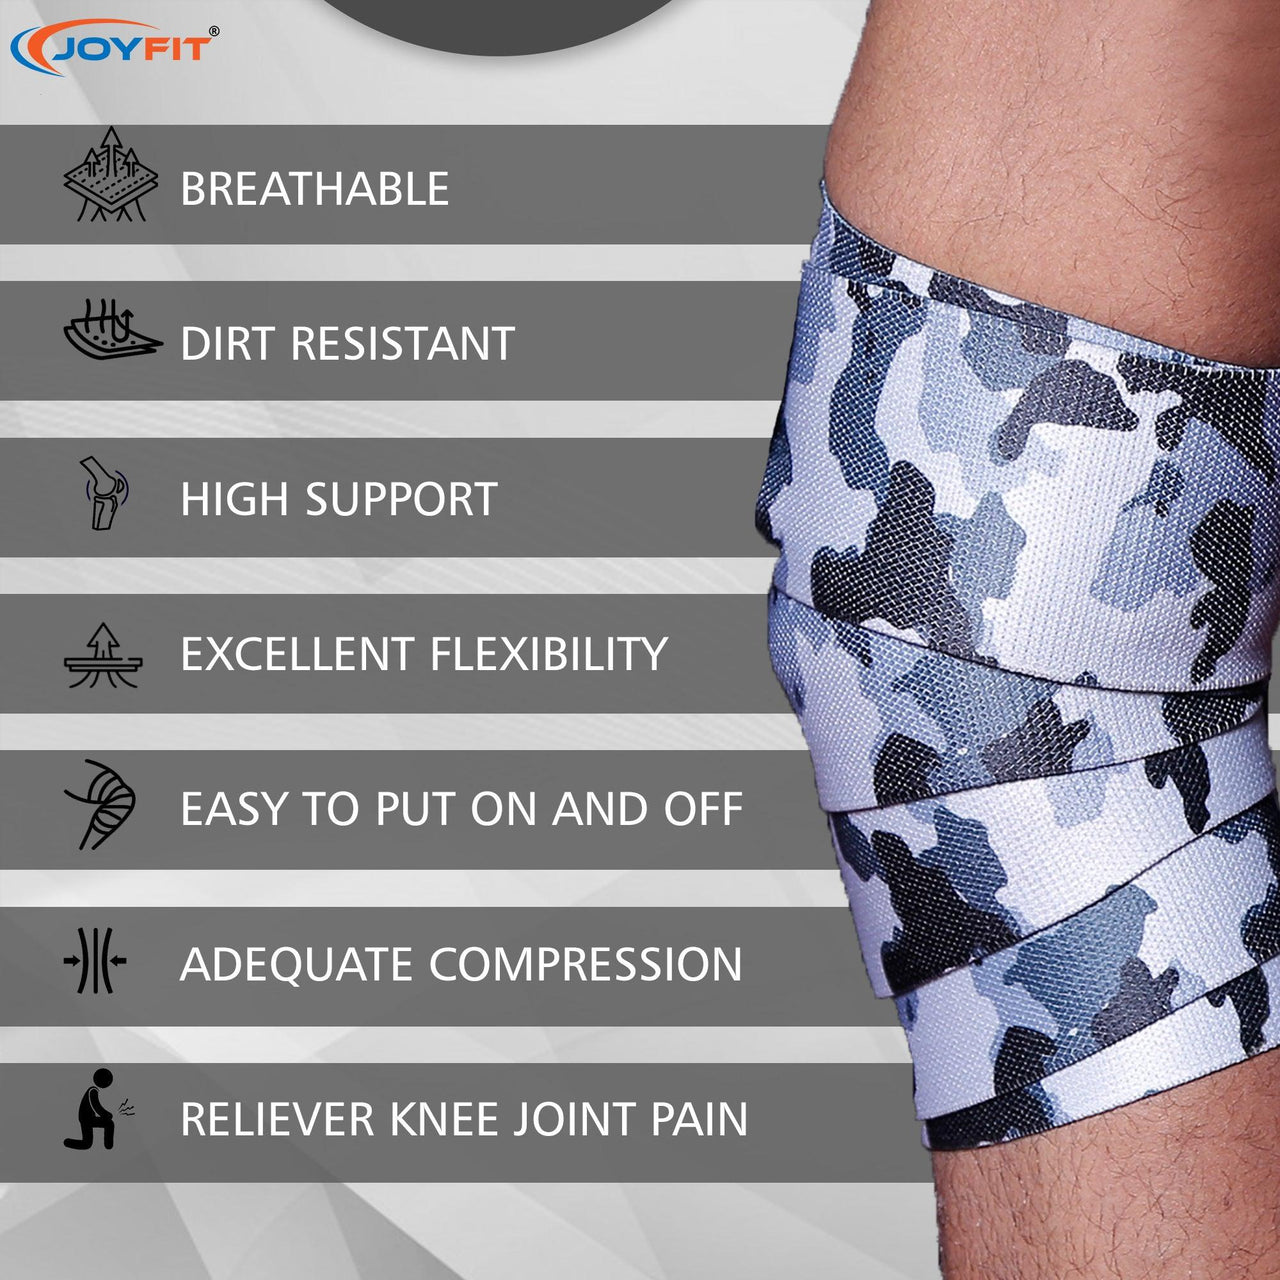 Knee Wraps for Weightlifting - Joyfit